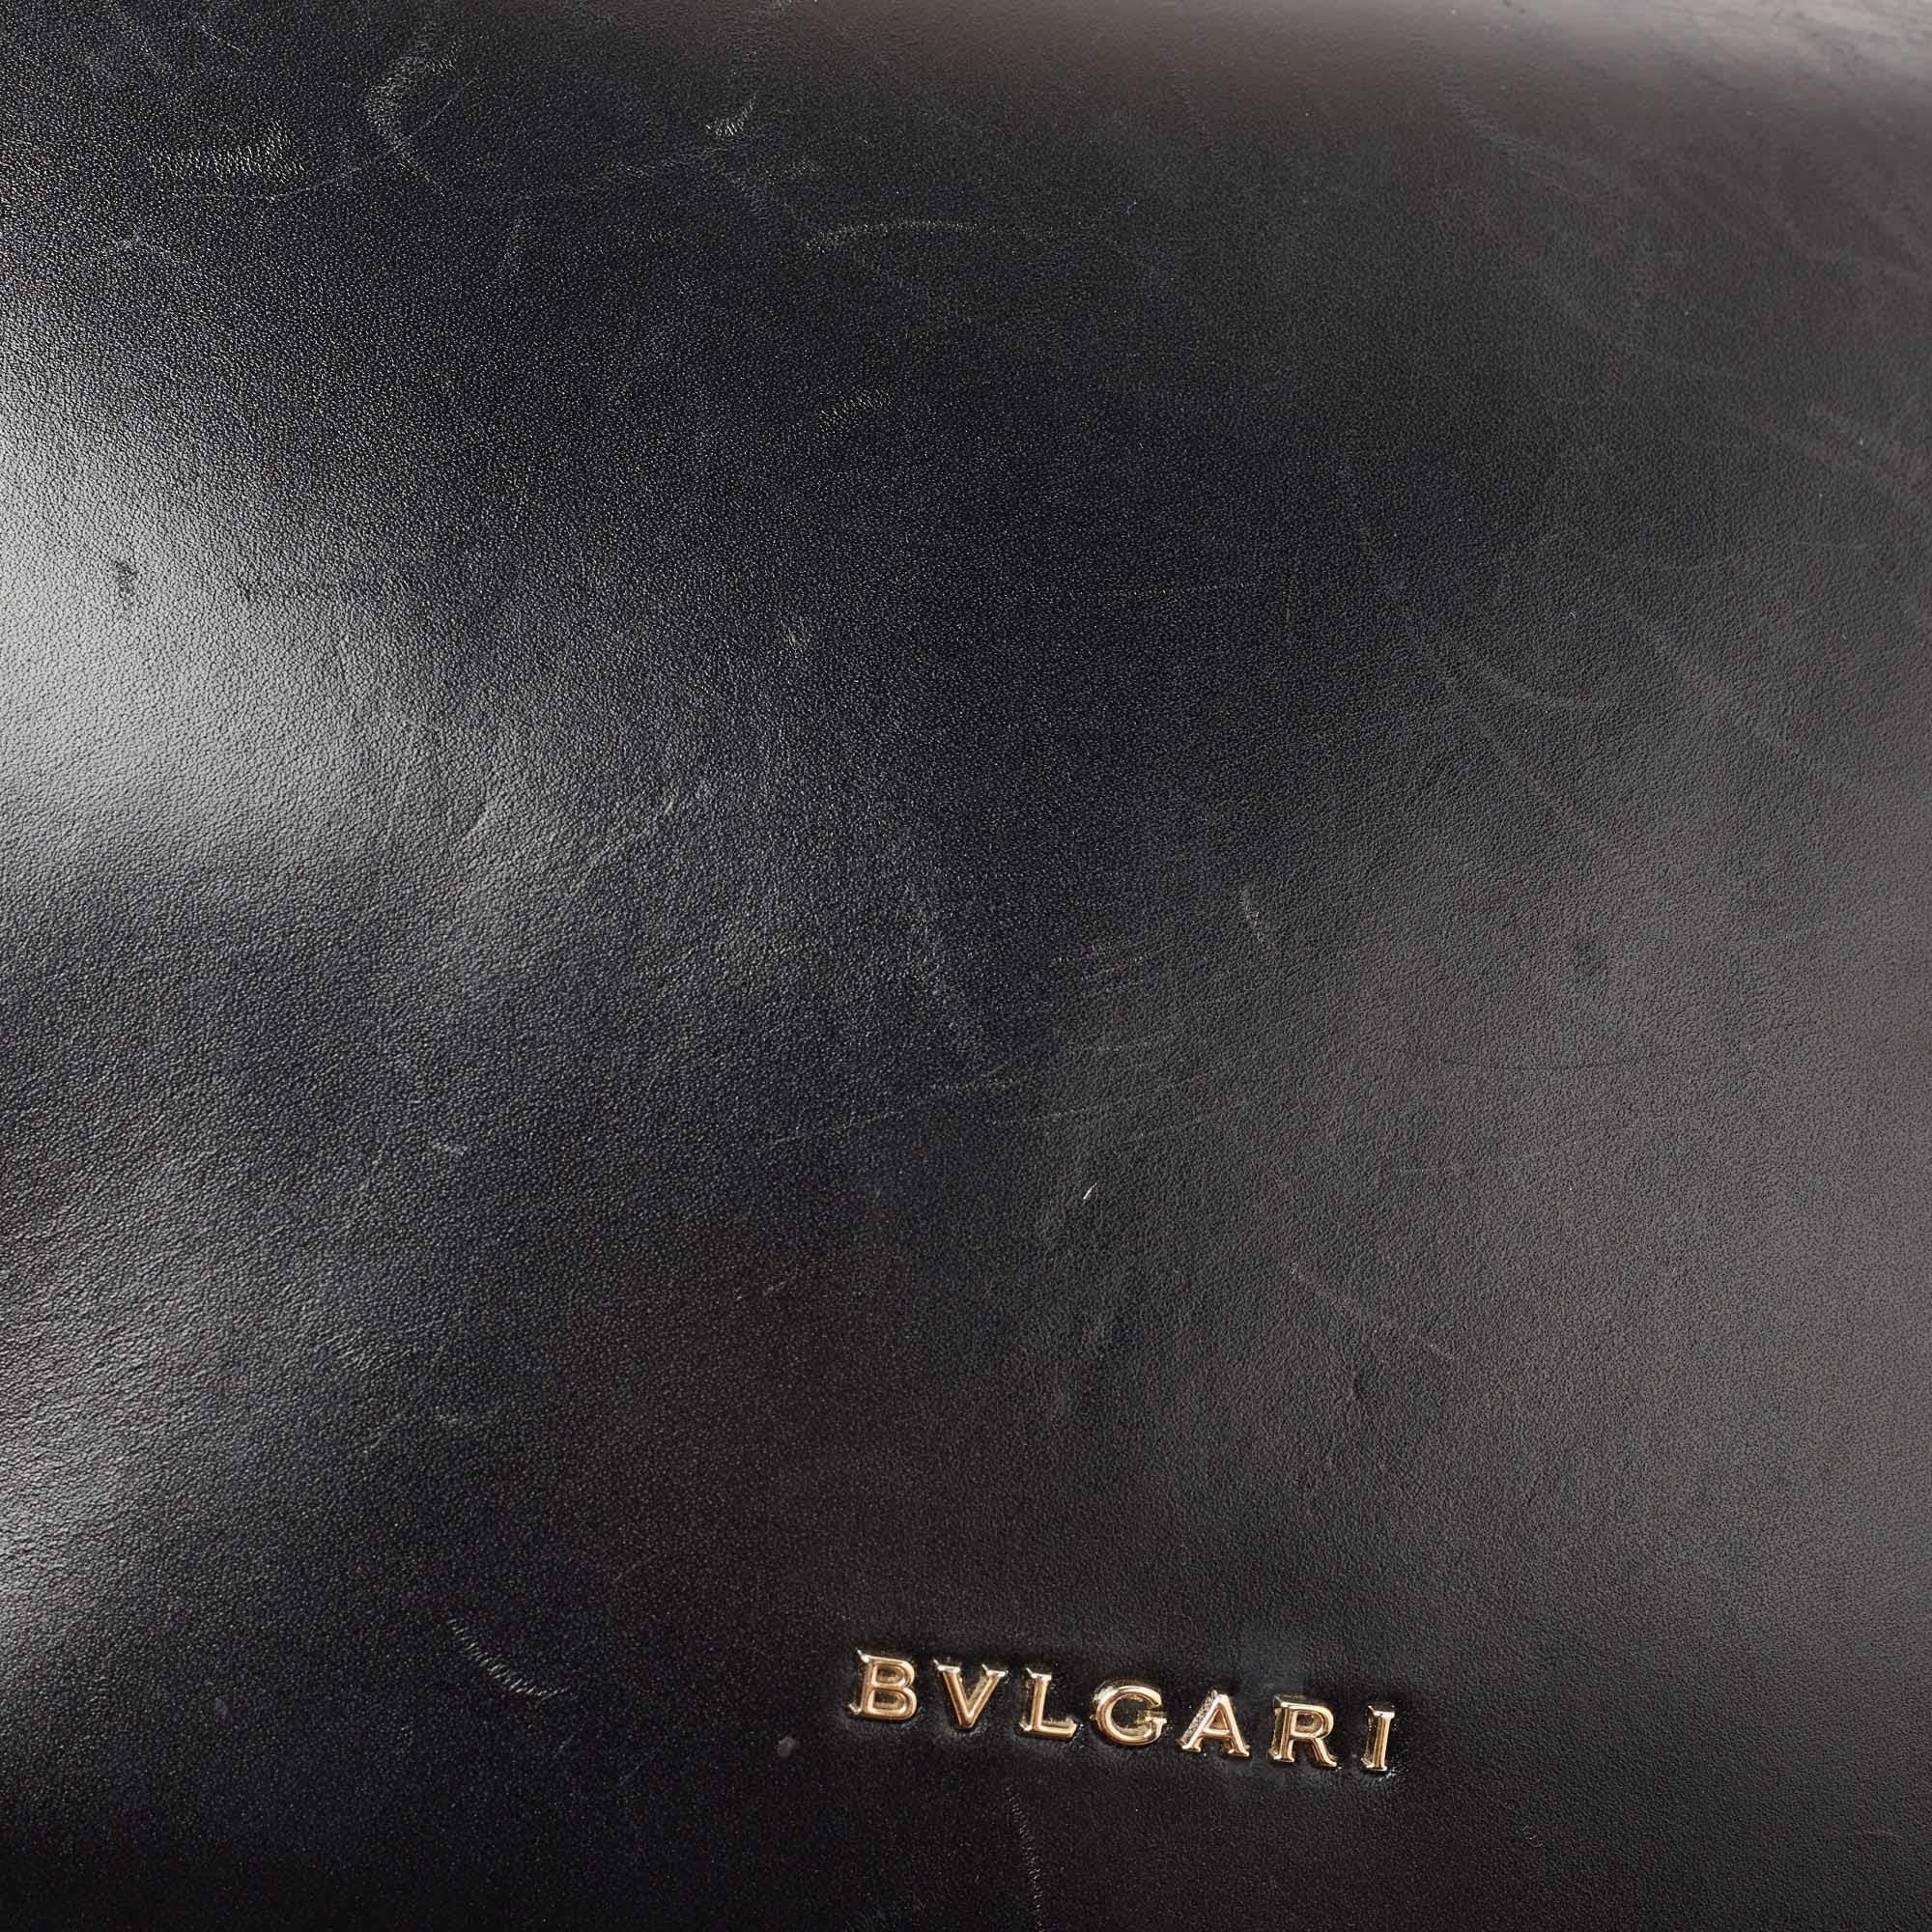 Bvlgari Black Leather Fiore Perspicio Shoulder Bag 10